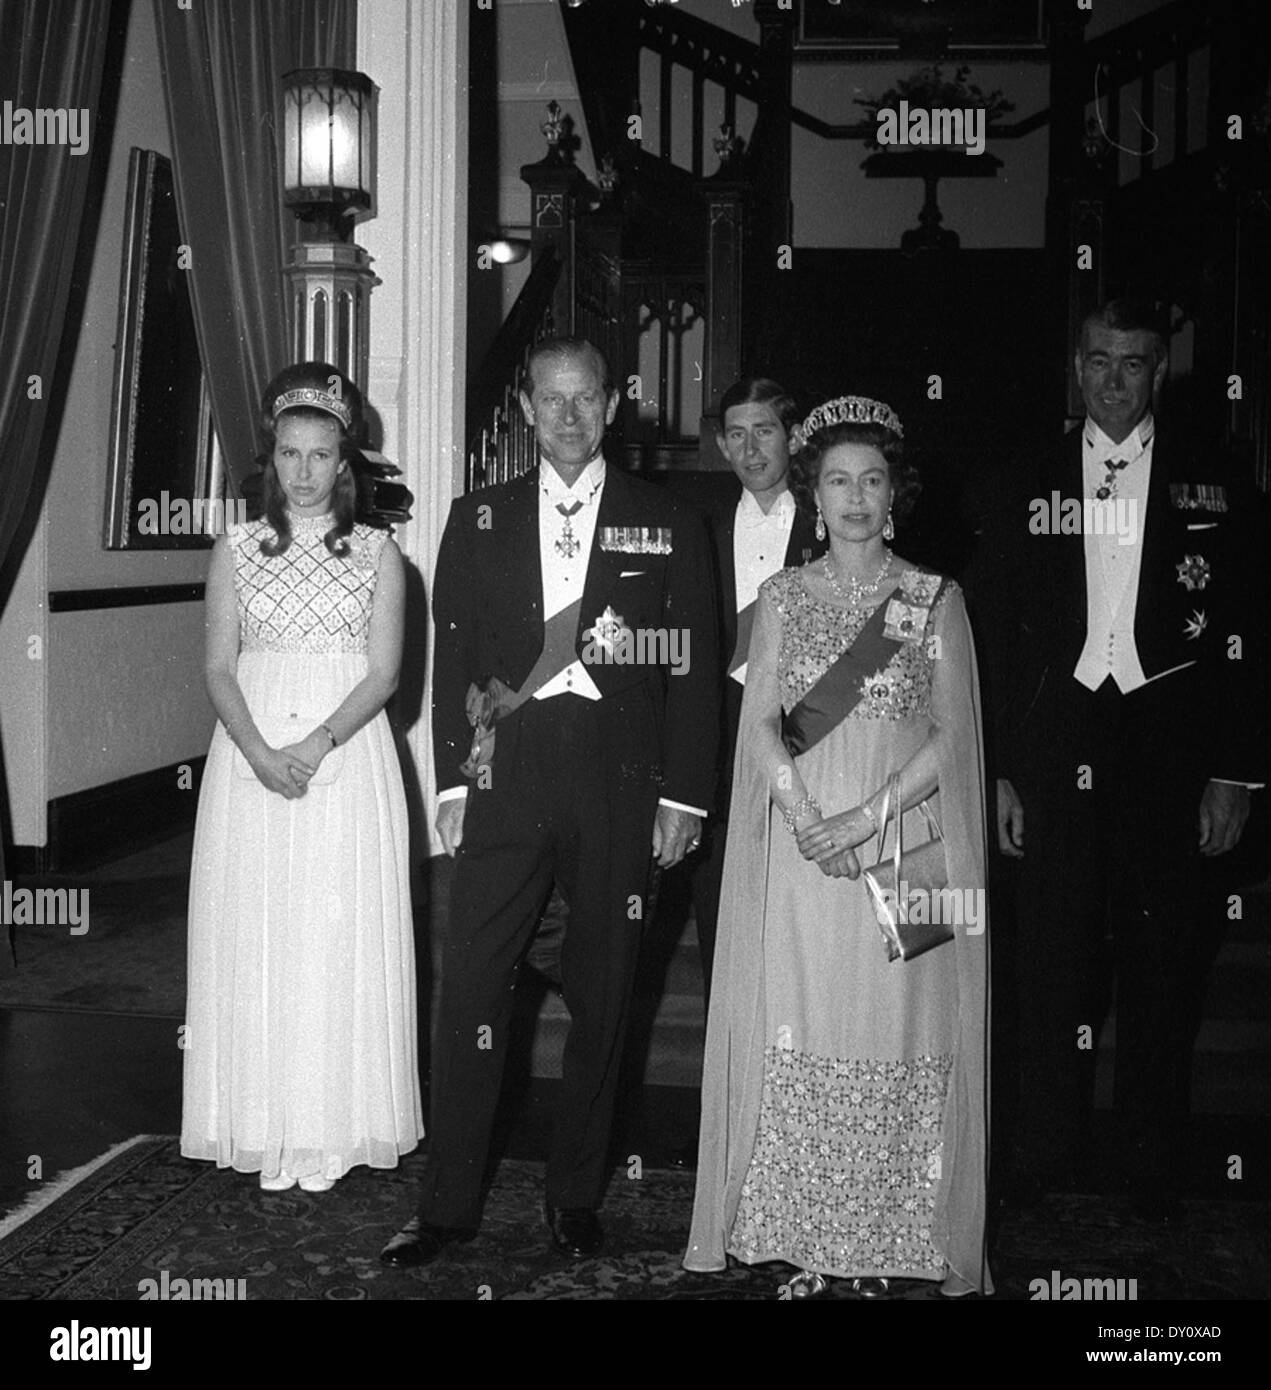 Königliche Familie mit Gouverneur Sir Roden Cutler bei einem abendlichen Empfang im Government House, Sydney während ihrer Tour für den Captain Cook Bi-Centenary feiern, 21. April 1970/Fotograf Maurie Wilmott Stockfoto